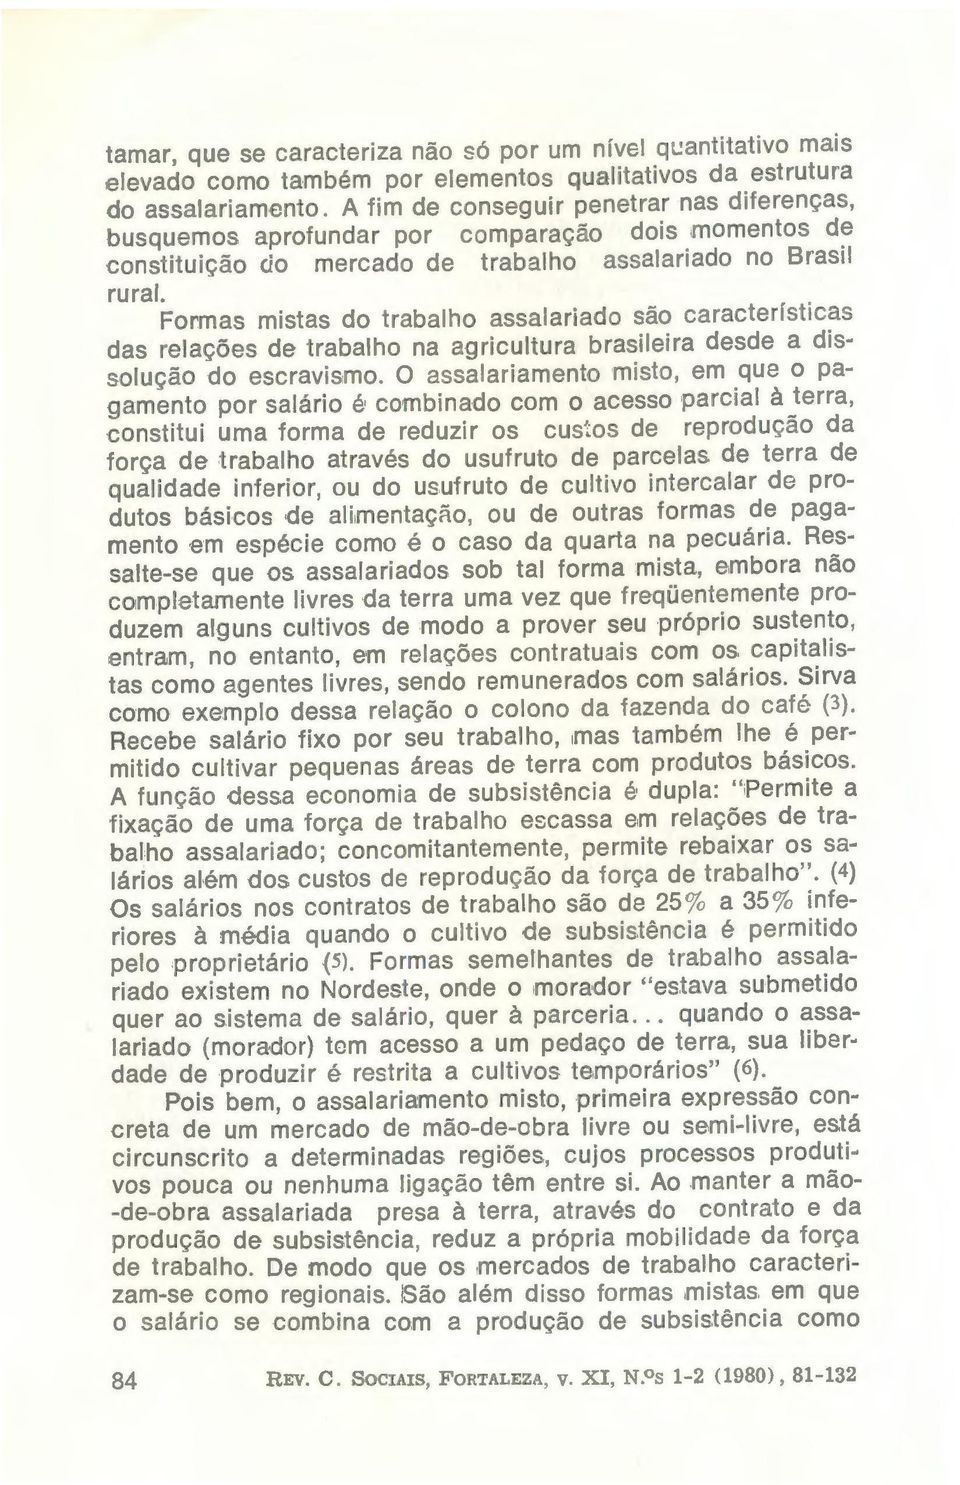 Formas mistas do trabalho assalariado são características das relações de trabalho na agricultura brasileira desde a dissolução do escravismo.